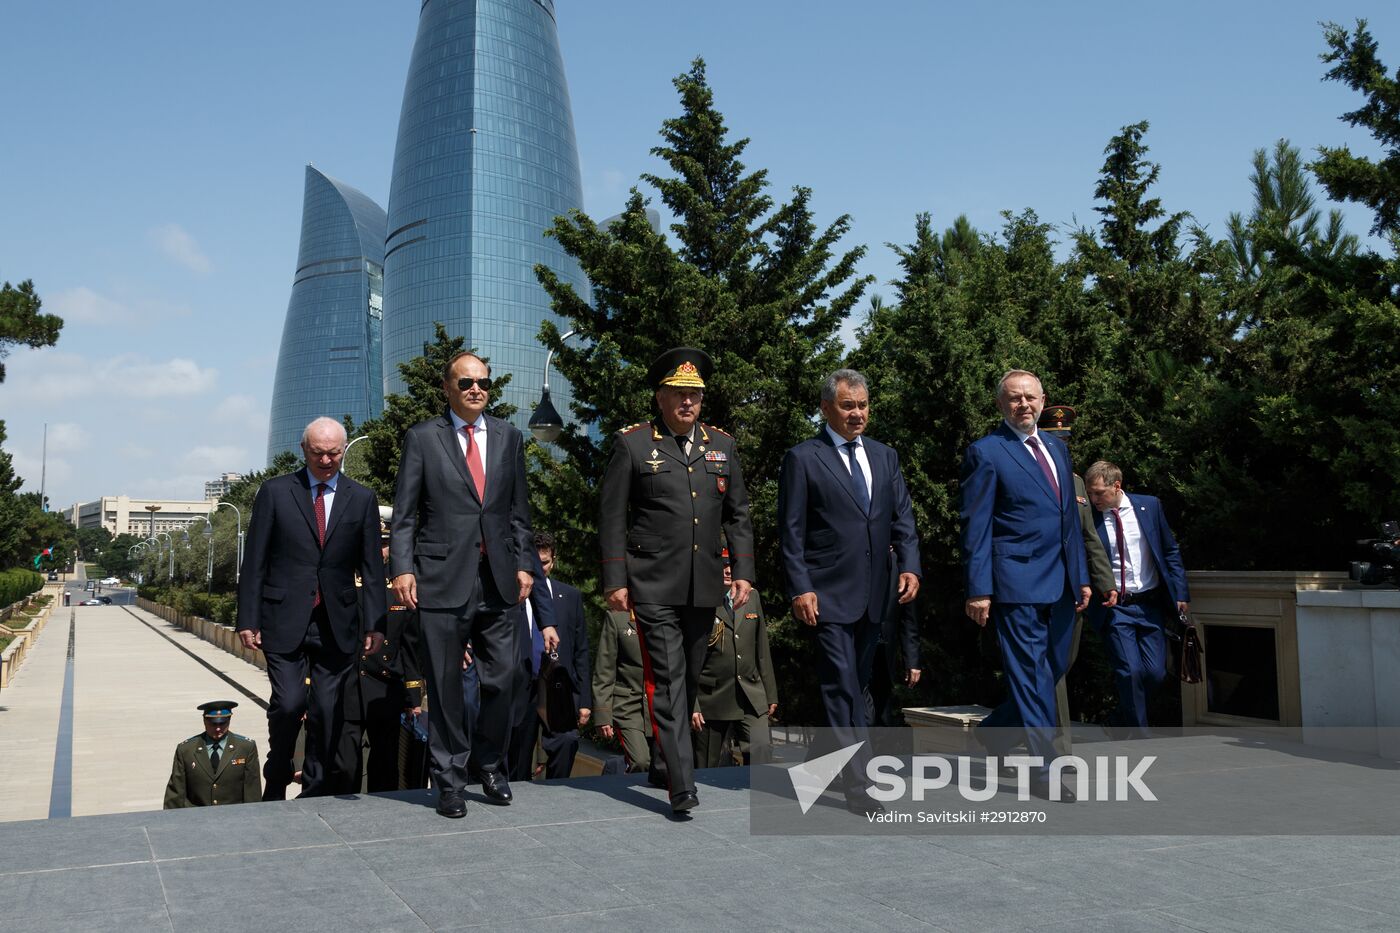 Defense Minister Sergei Shoigu's visit to Azerbaijan